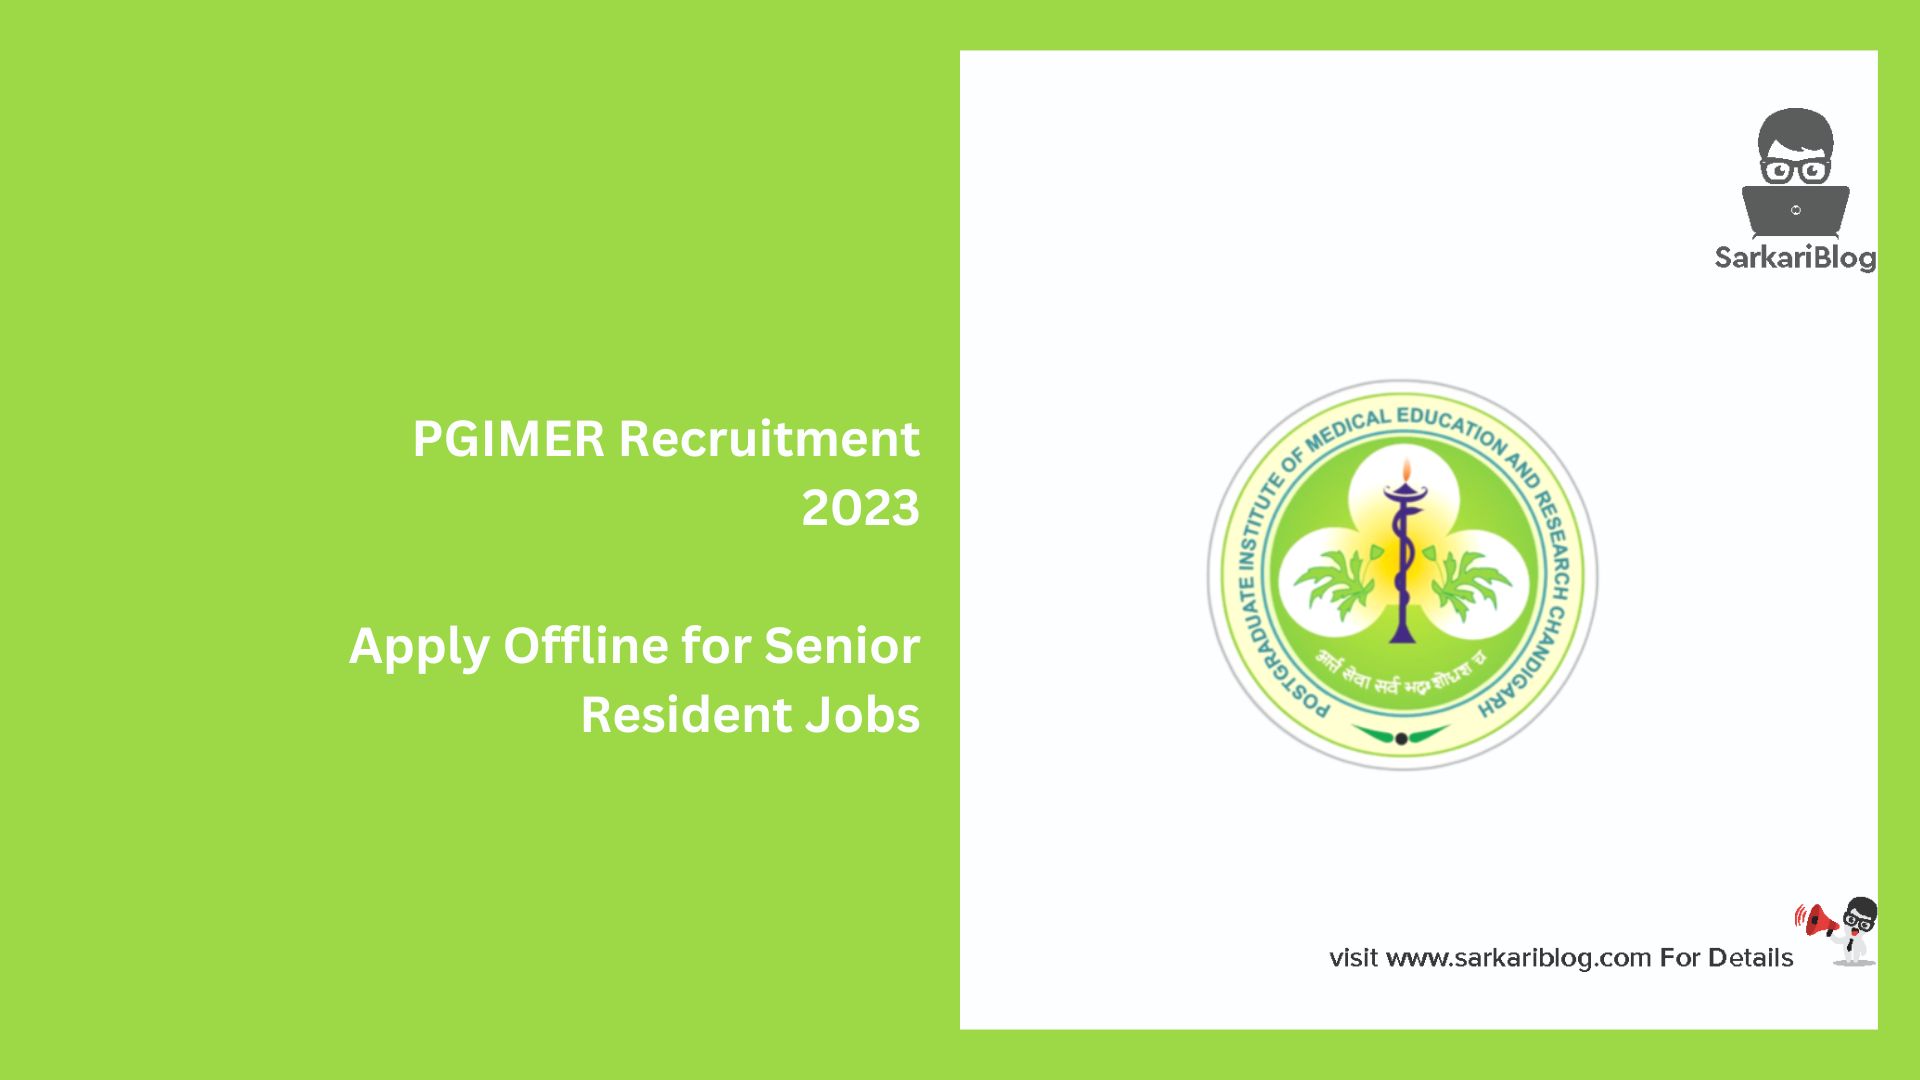 PGIMER Recruitment 2023